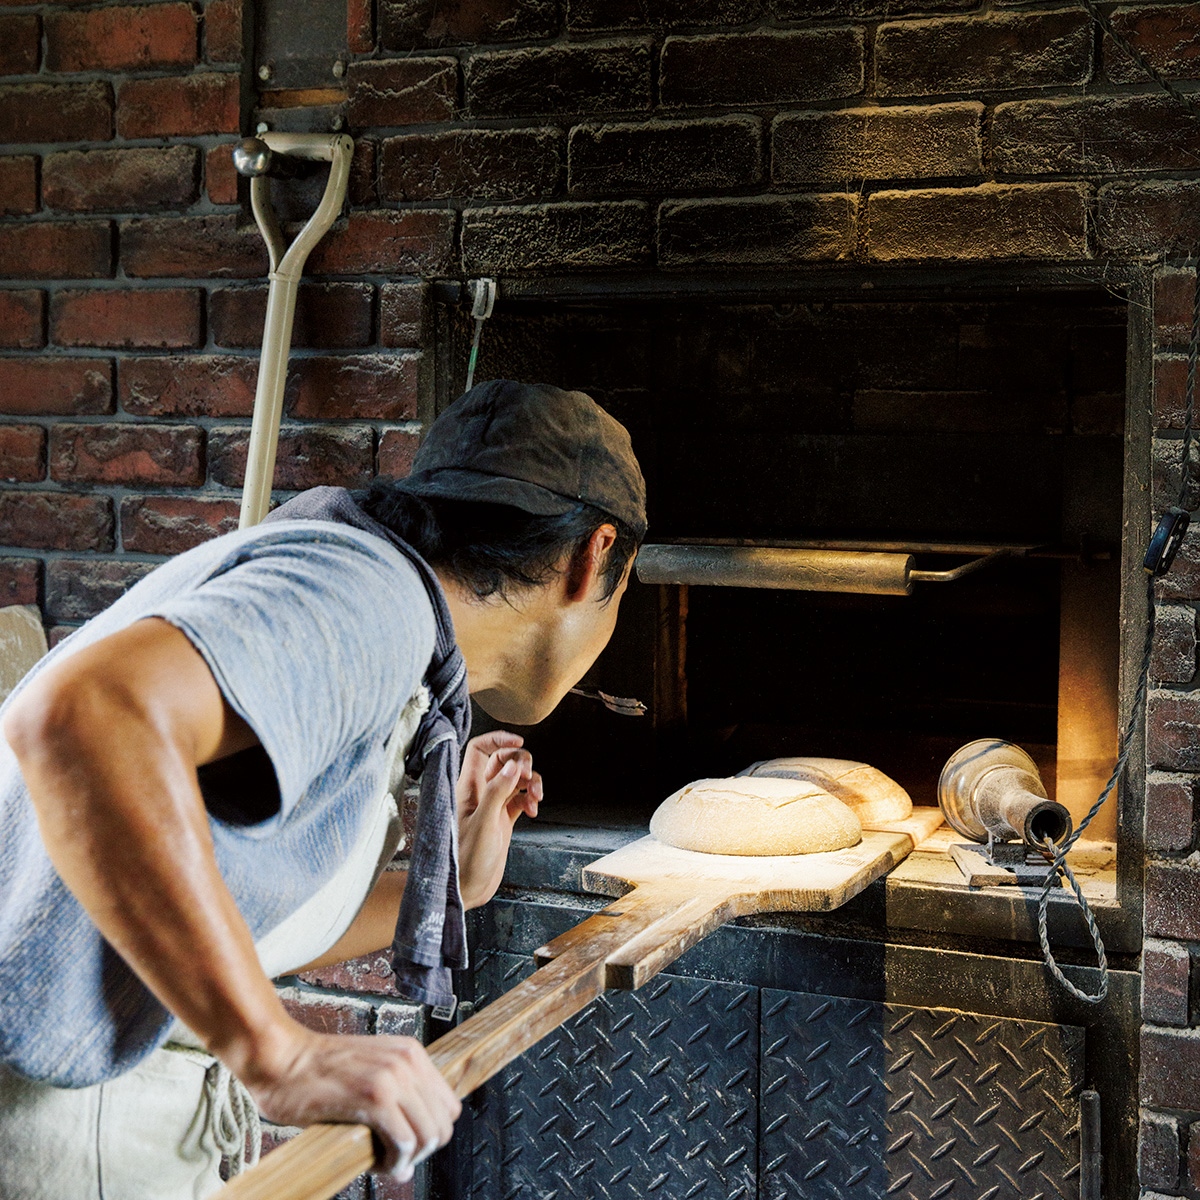 フランス式薪窯はパーツを輸入し、足りない部品は鉄工所に依頼して自作で作りあげた。下に薪を焚べて上の窯に蓄熱する。カンパーニュなら一度に40個ほどが入る。